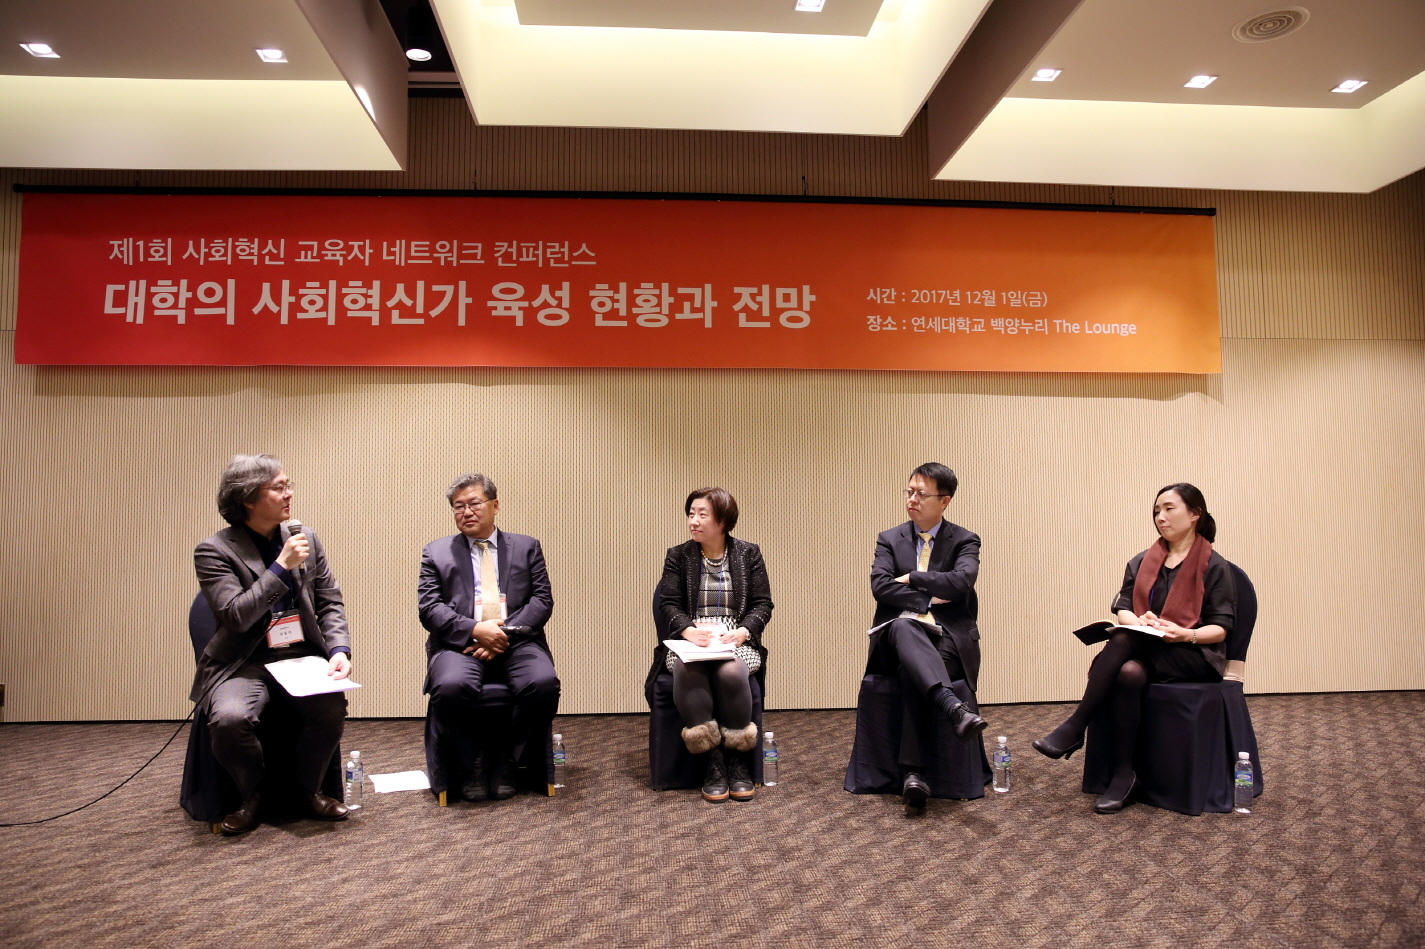 제 1회 사회혁신 교육자 네트워크 컨퍼런스 개최 